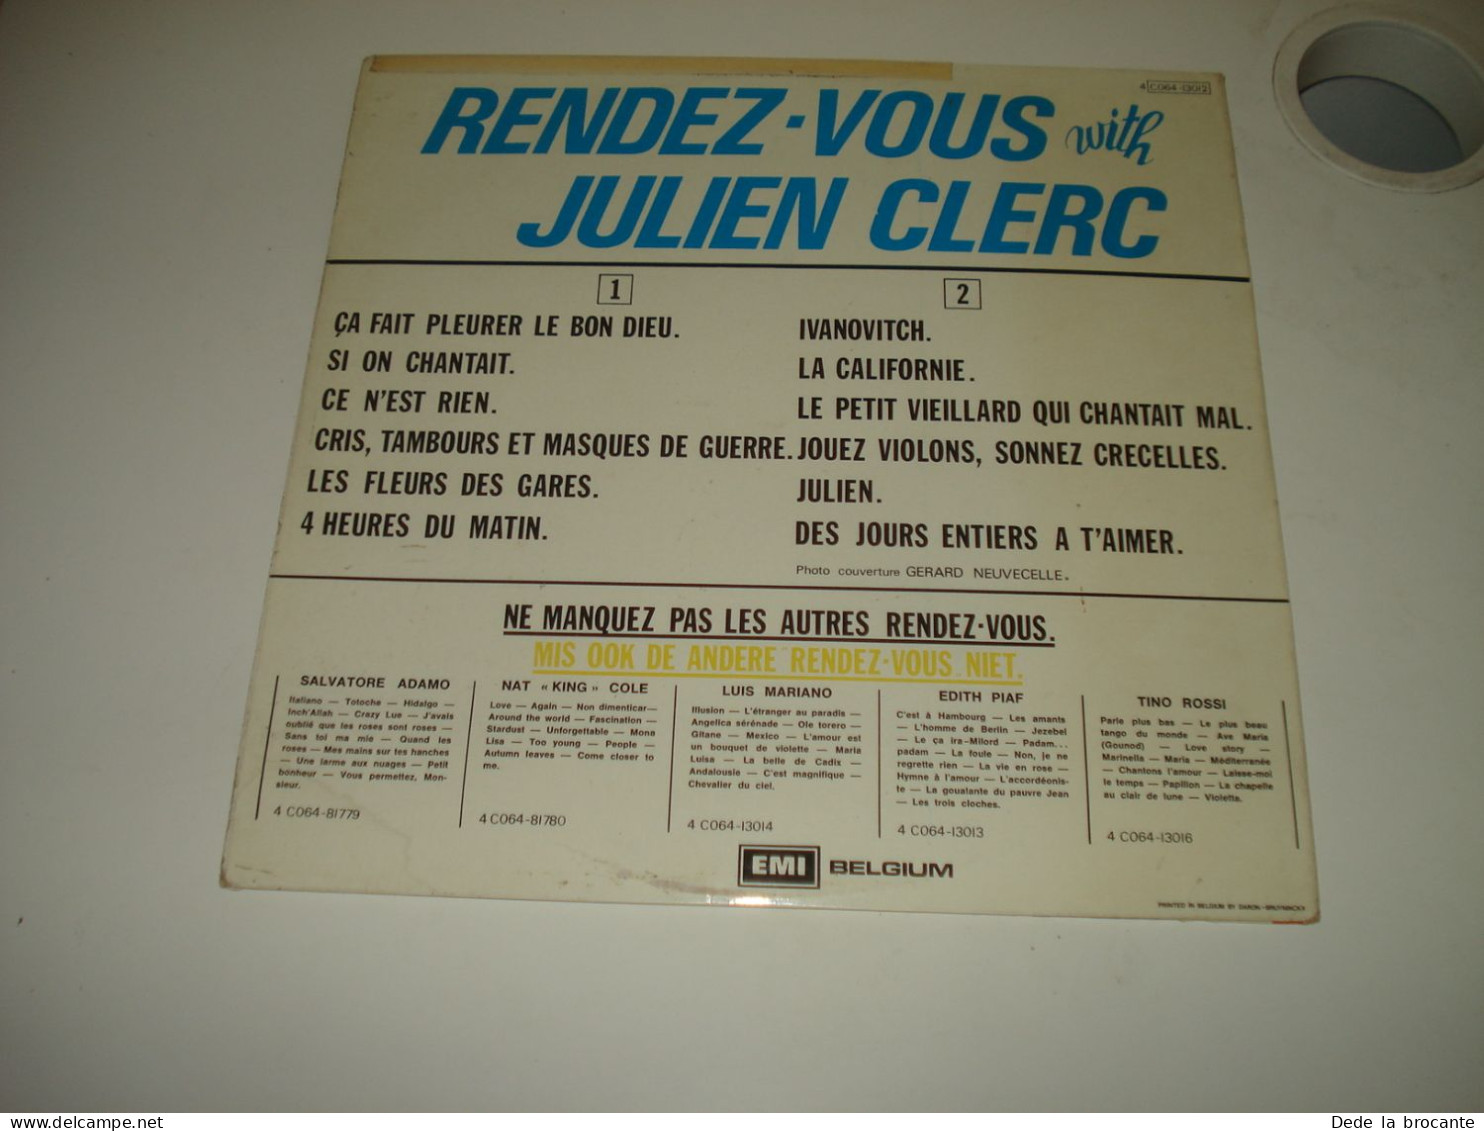 B14 / Julien Clerc – Rendez-Vous With Julien Clerc - 4C064-1312 - BE 1974  NM/EX - Disco, Pop